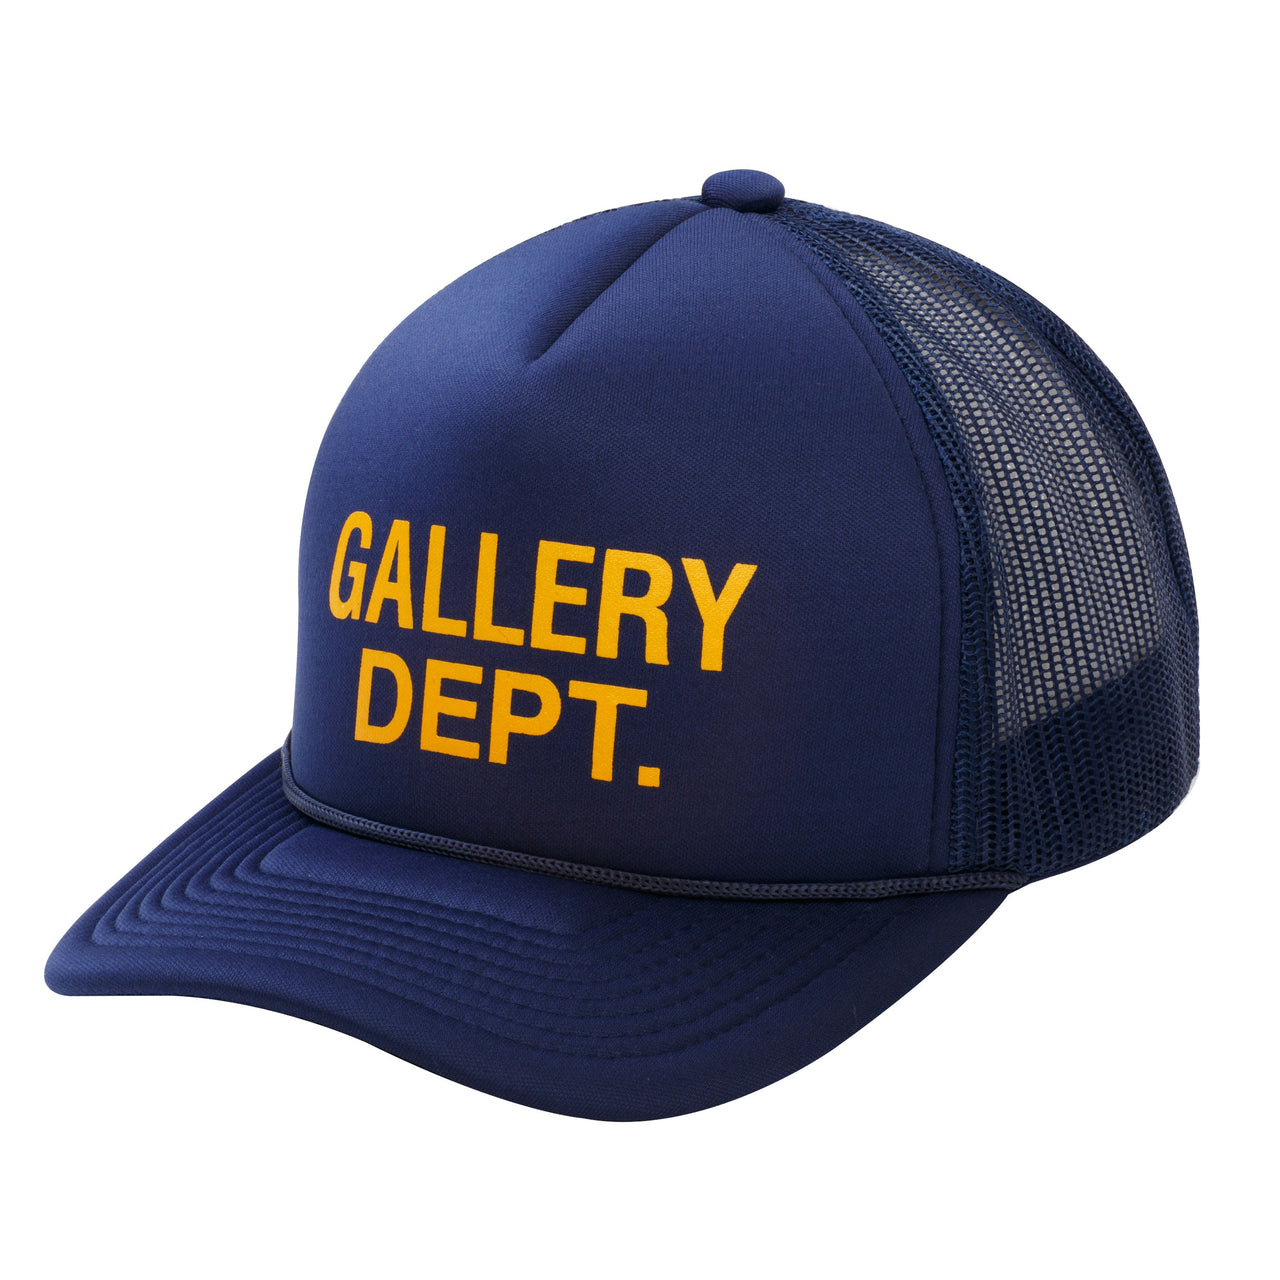 Gallery Dept. Logo Trucker Navy